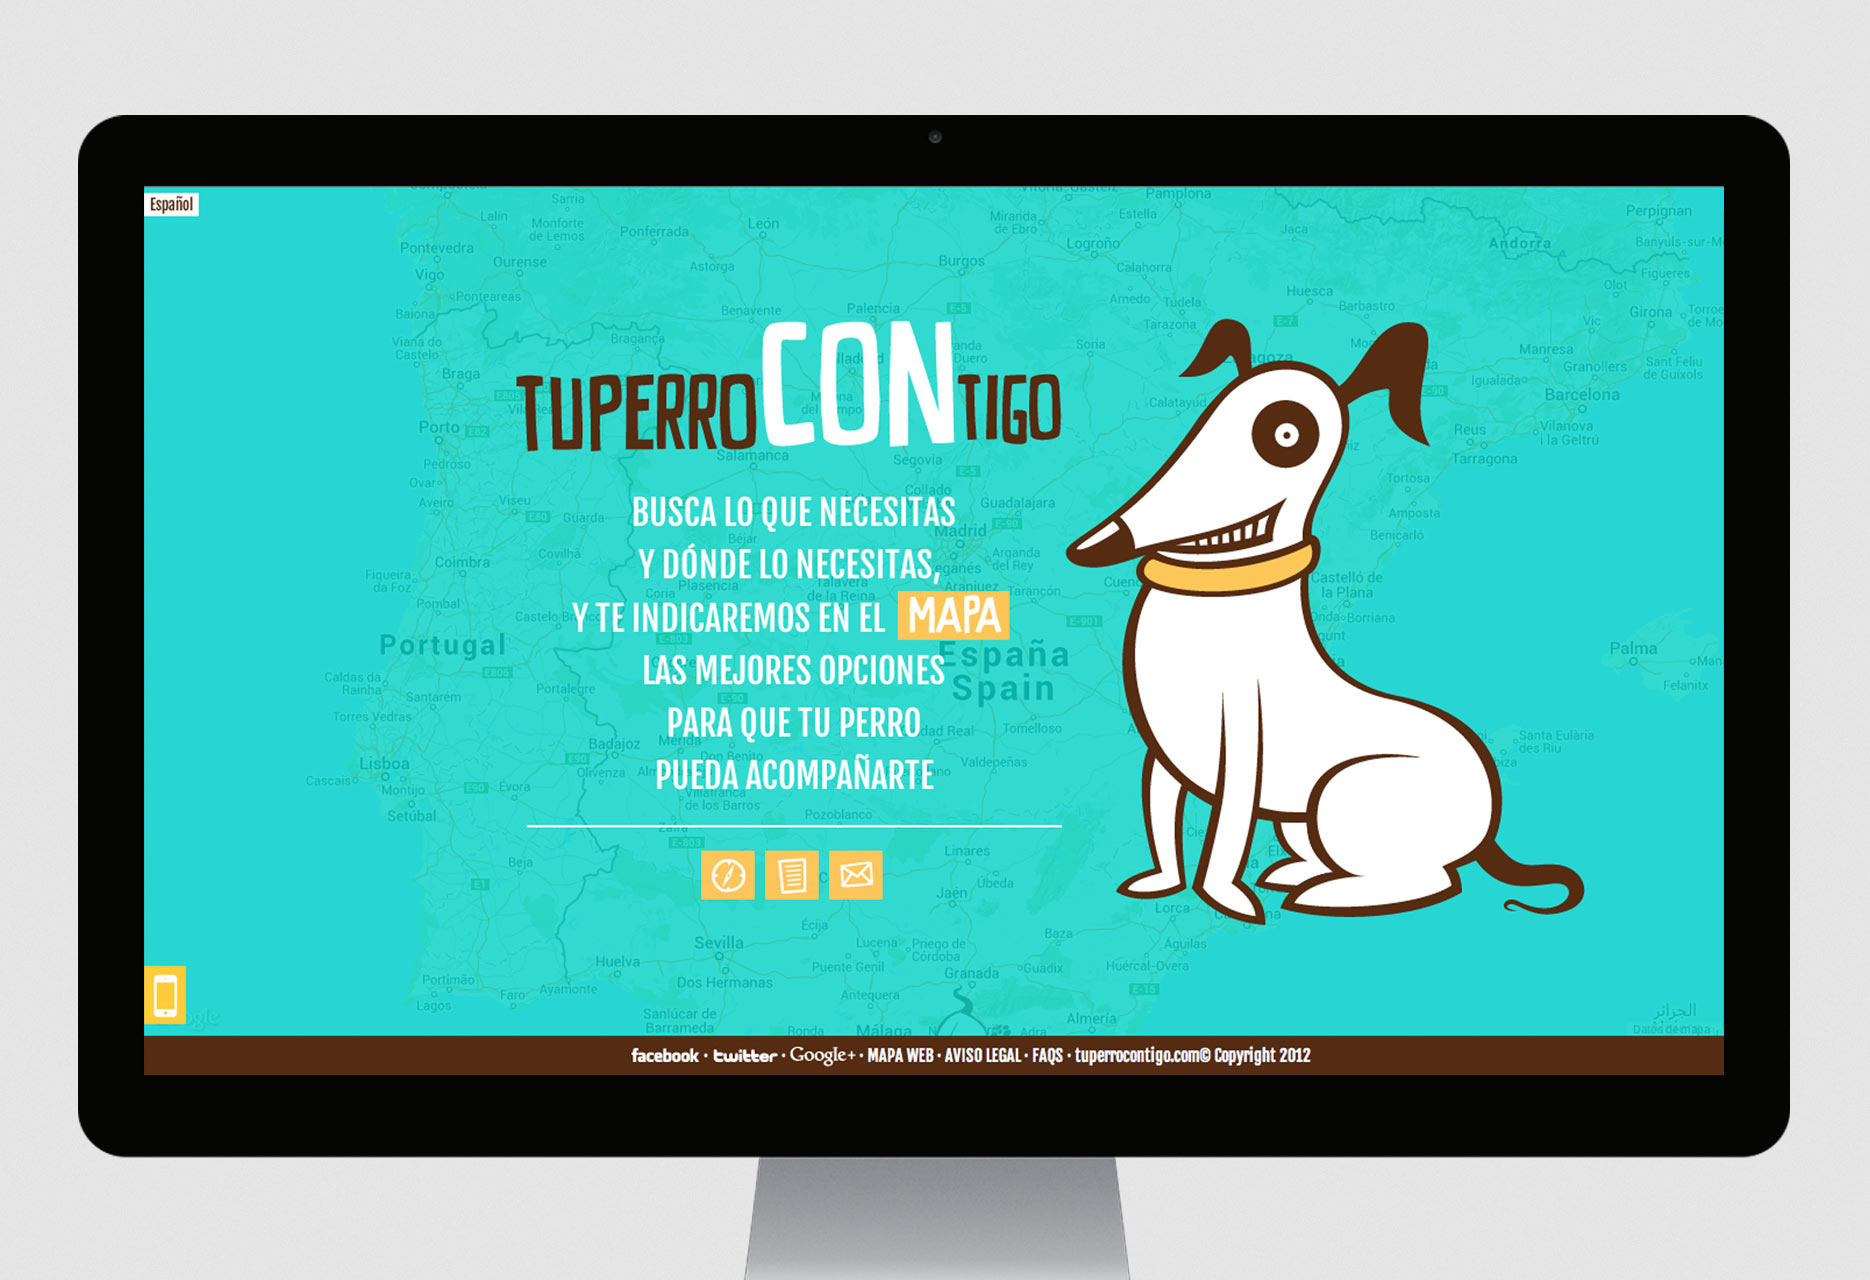 Social net website Tu perro contigo - mobile app / web development / responsive design / web design / CMS